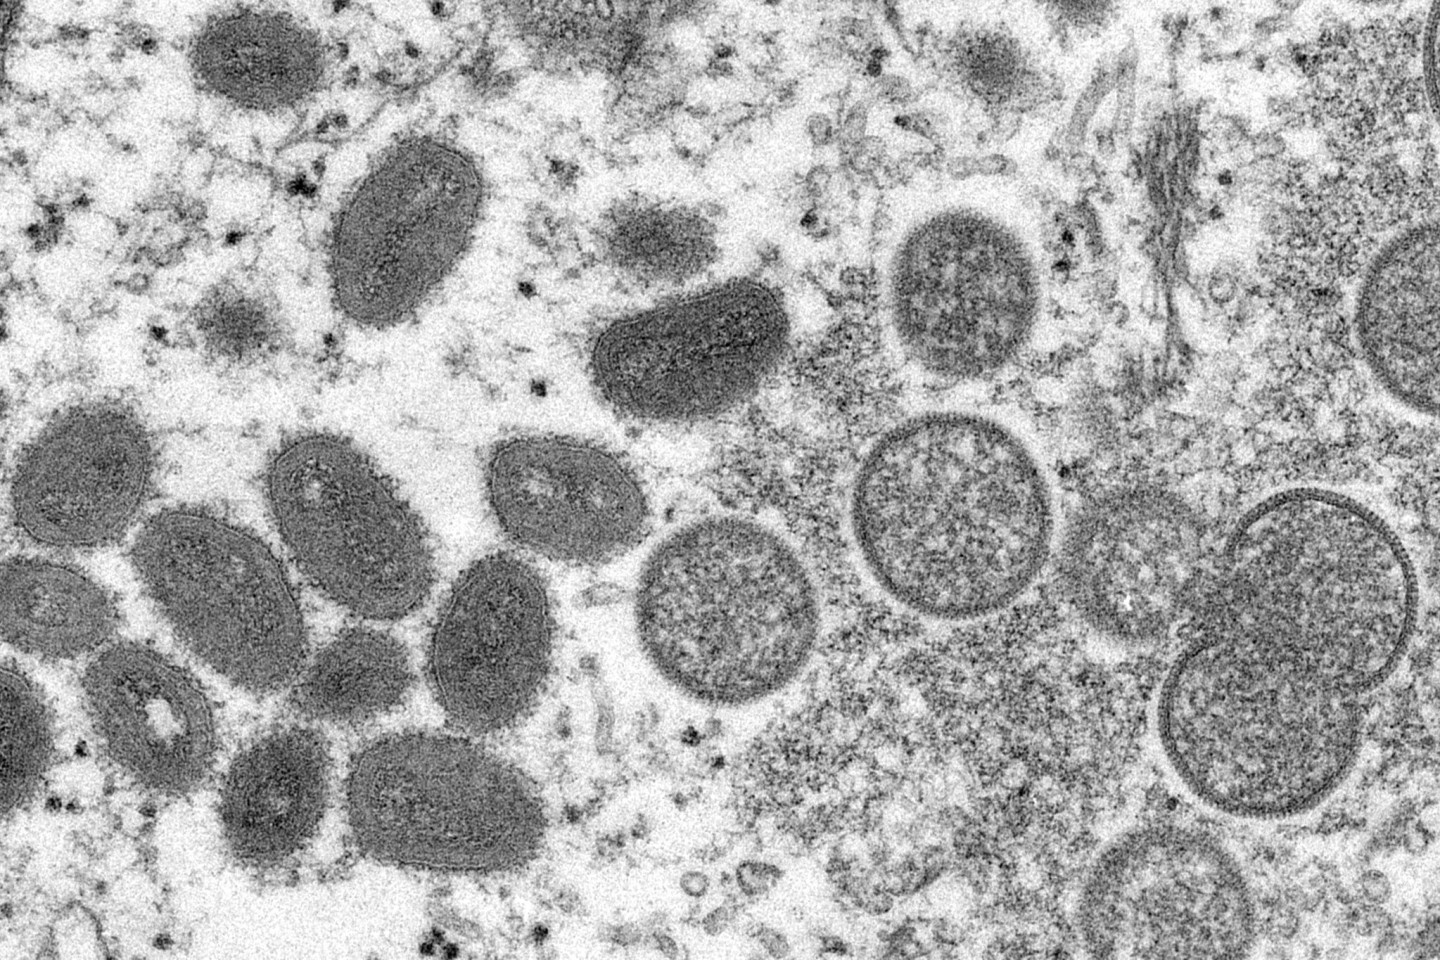 Elektronenmikroskopische Aufnahme: Reife, ovale Affenpockenviren (l.) und kugelförmige unreife Virionen (r.) aus einer menschlichen Hautprobe.